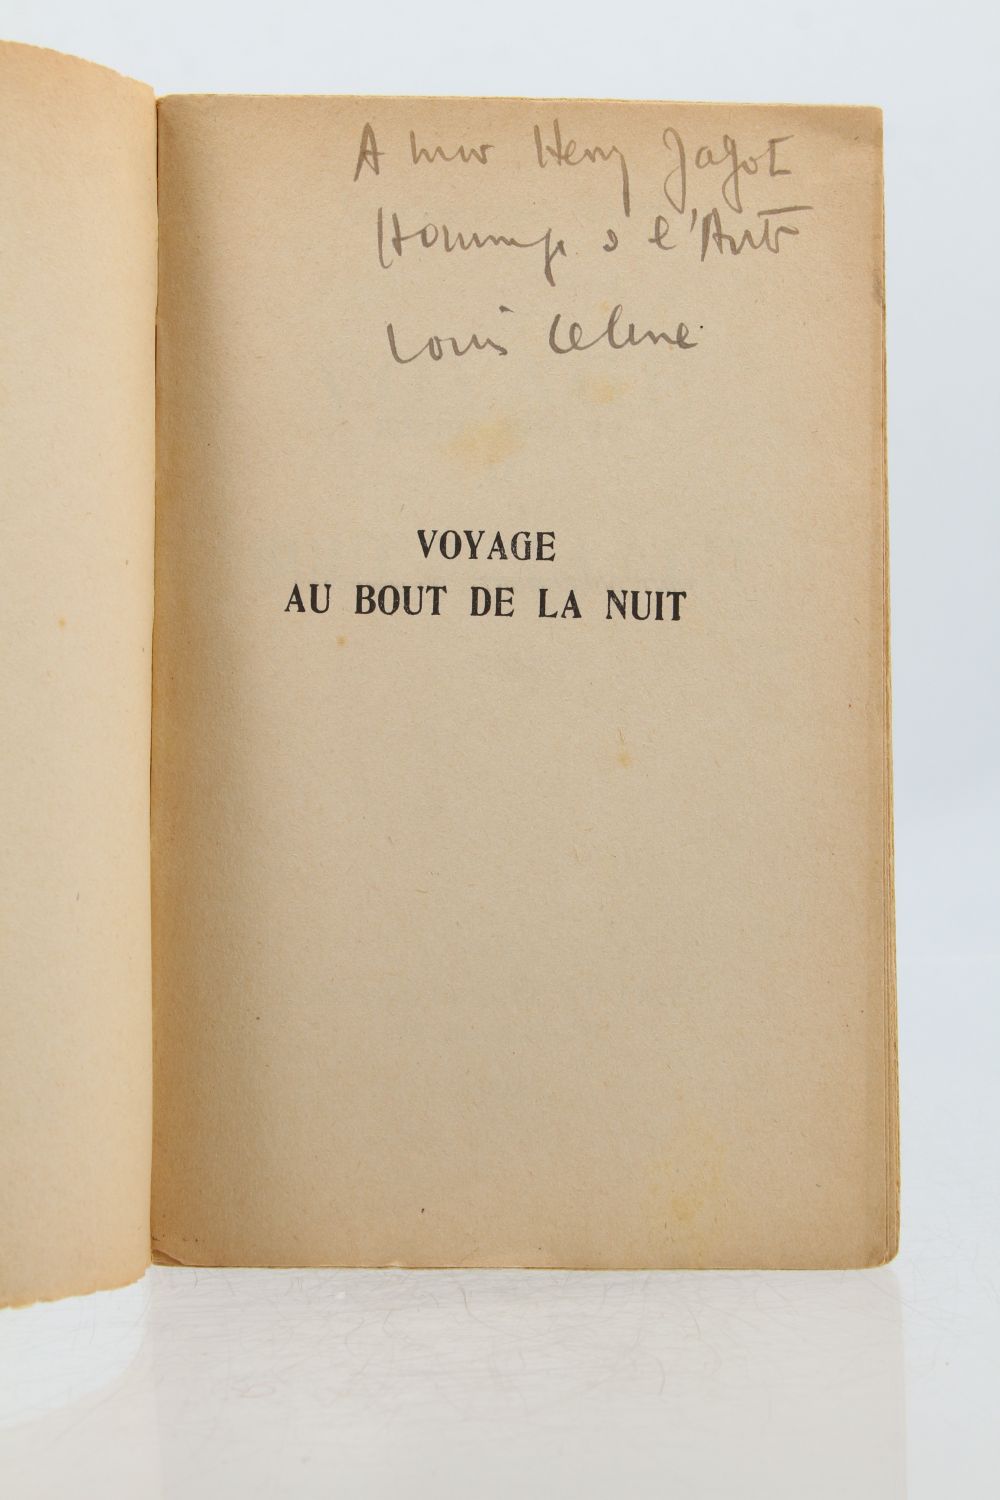 CELINE ,Louis-Ferdinand : Voyage au bout de la nuit / Editions